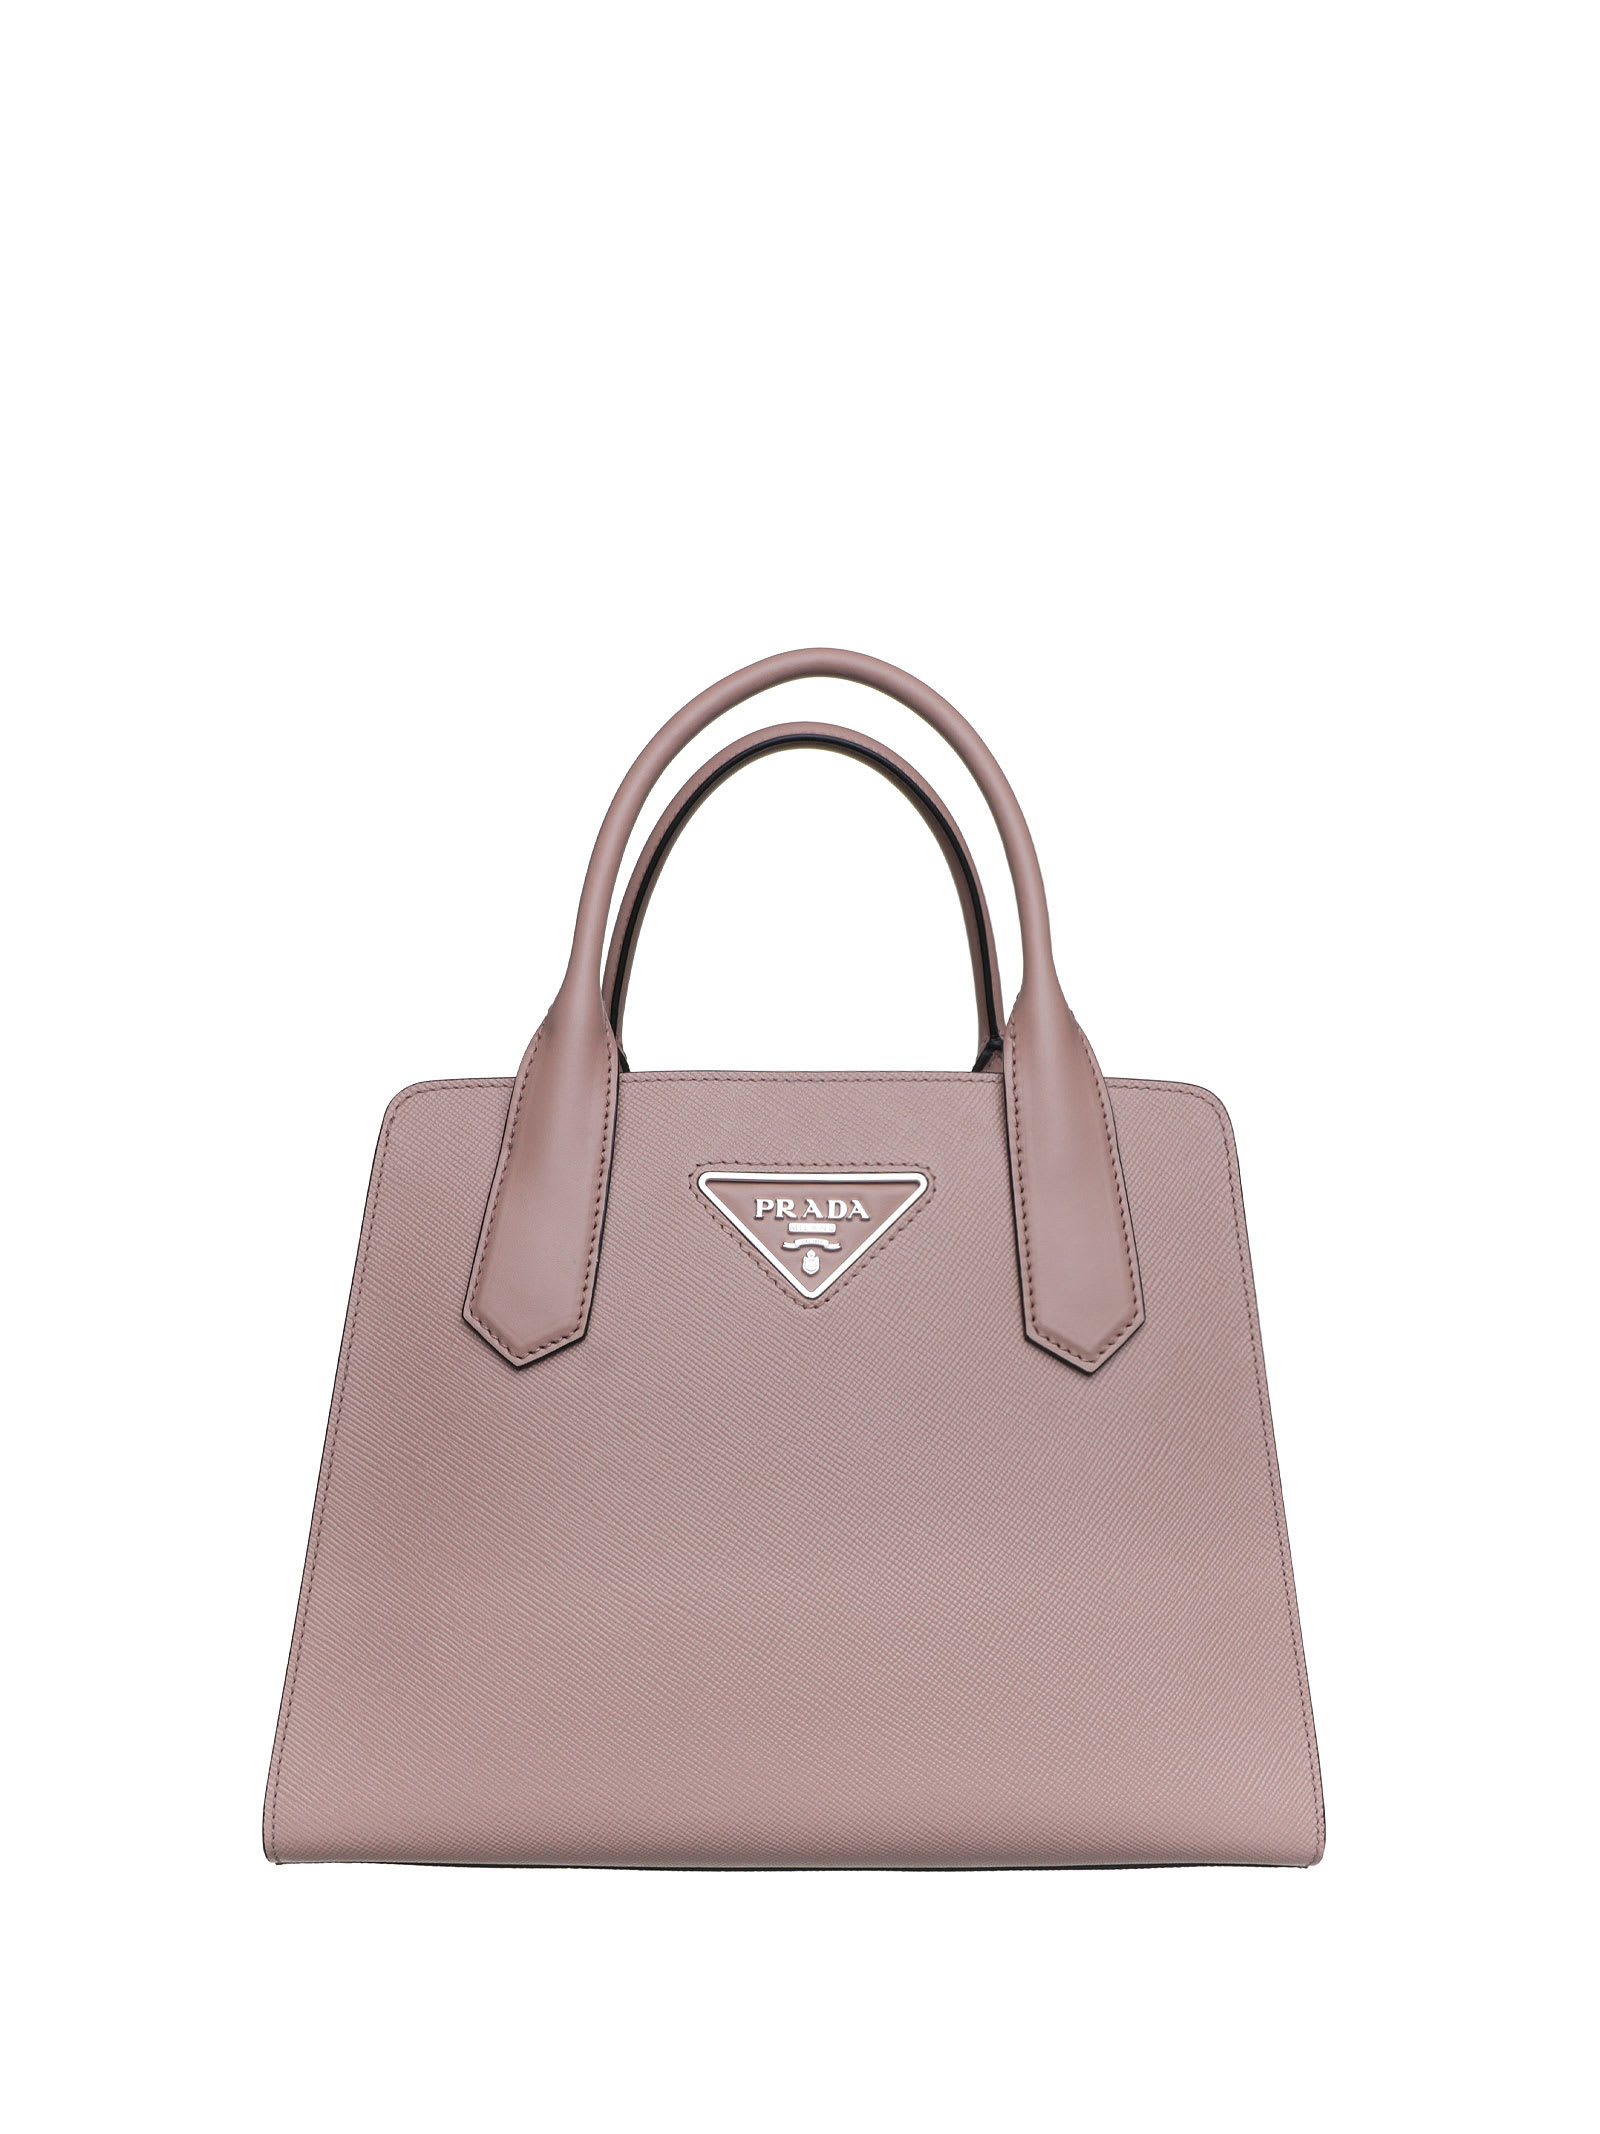 Prada Prada Cammeo Pink Handbag